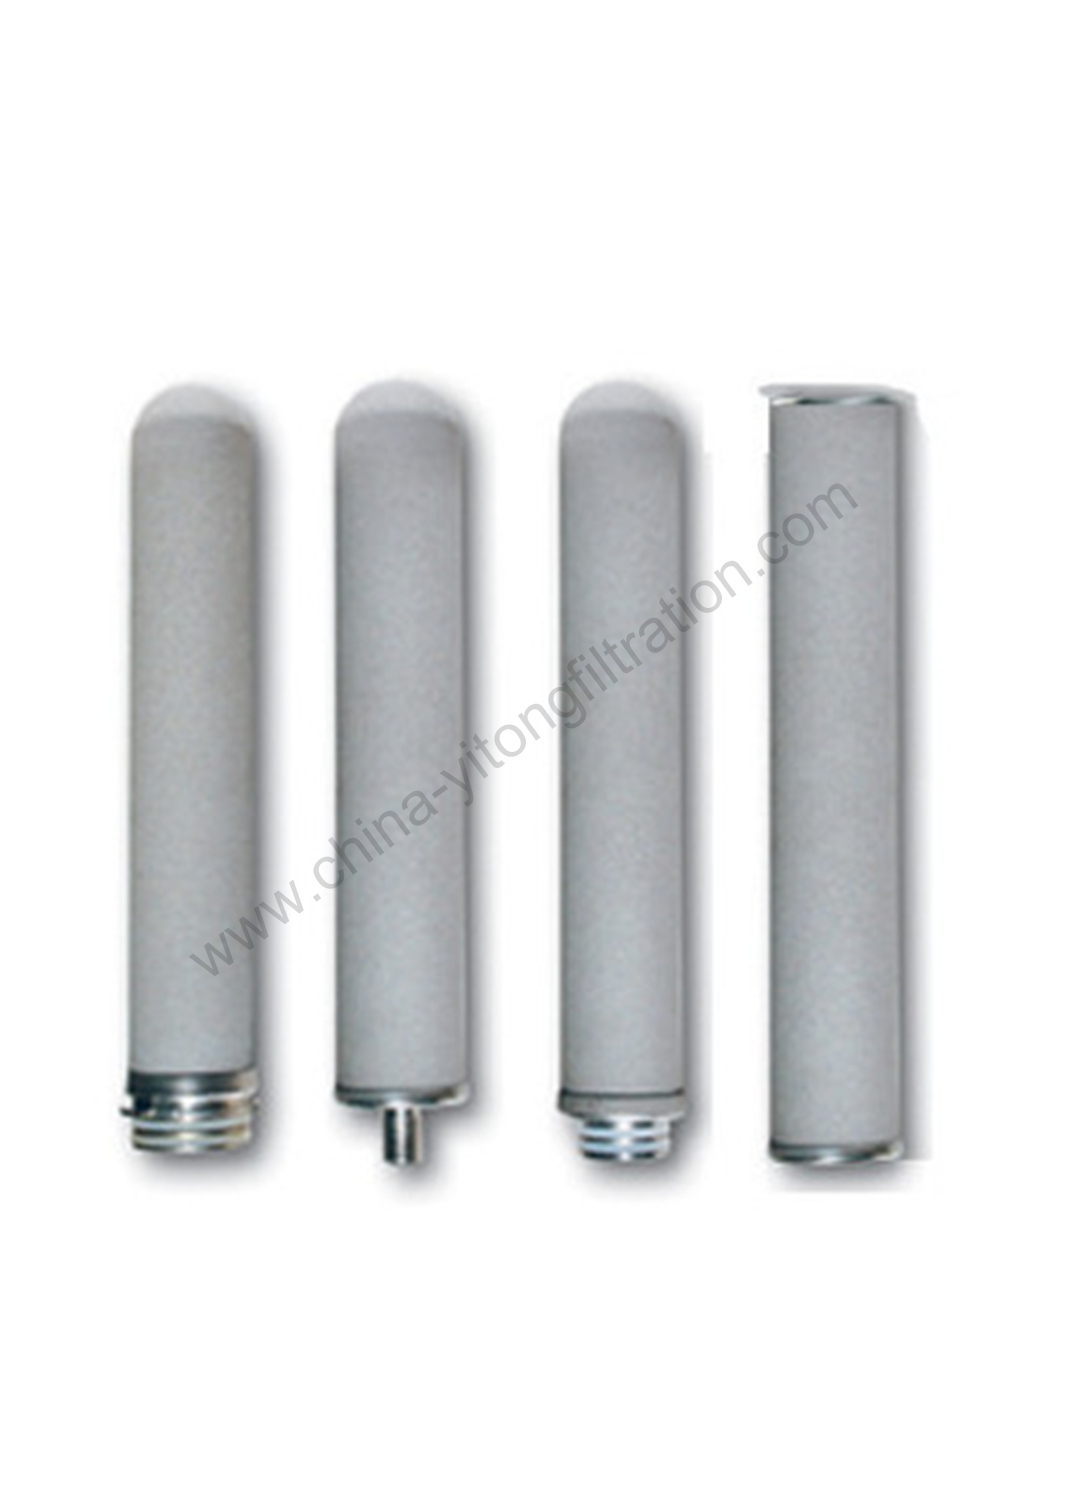 Titanium powder filter cartridge